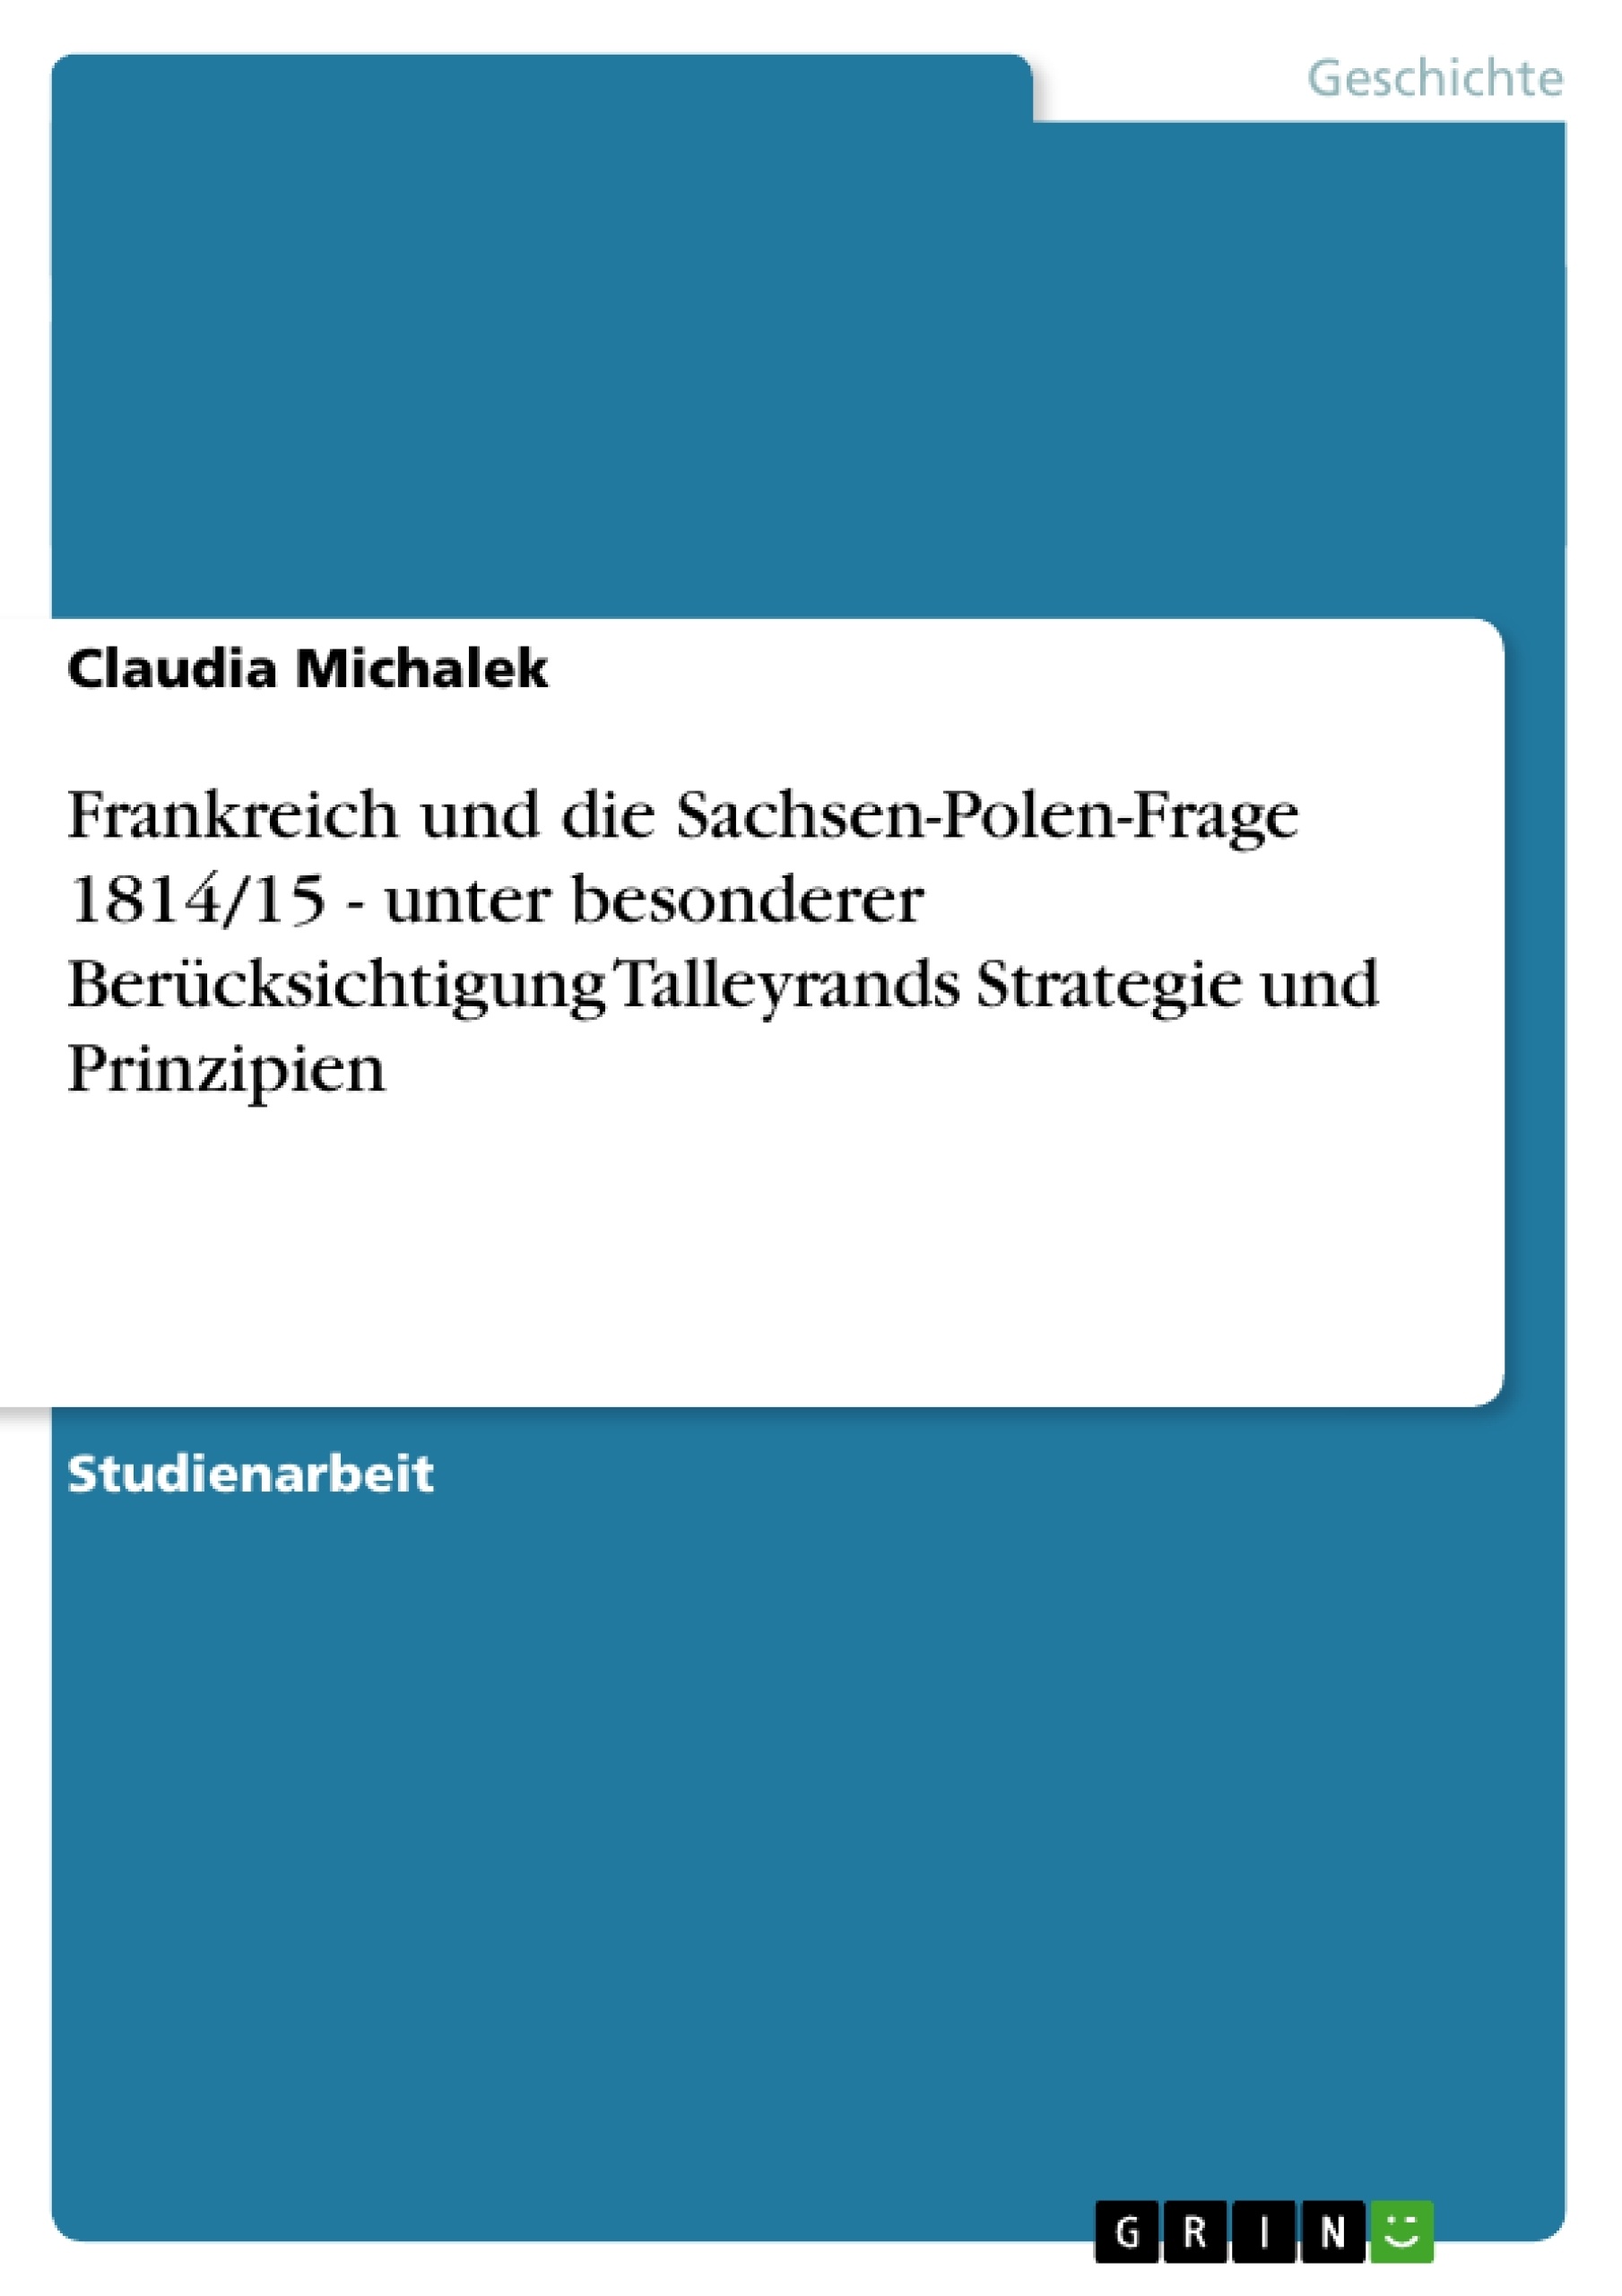 Titre: Frankreich und die Sachsen-Polen-Frage 1814/15 - unter besonderer Berücksichtigung Talleyrands Strategie und Prinzipien